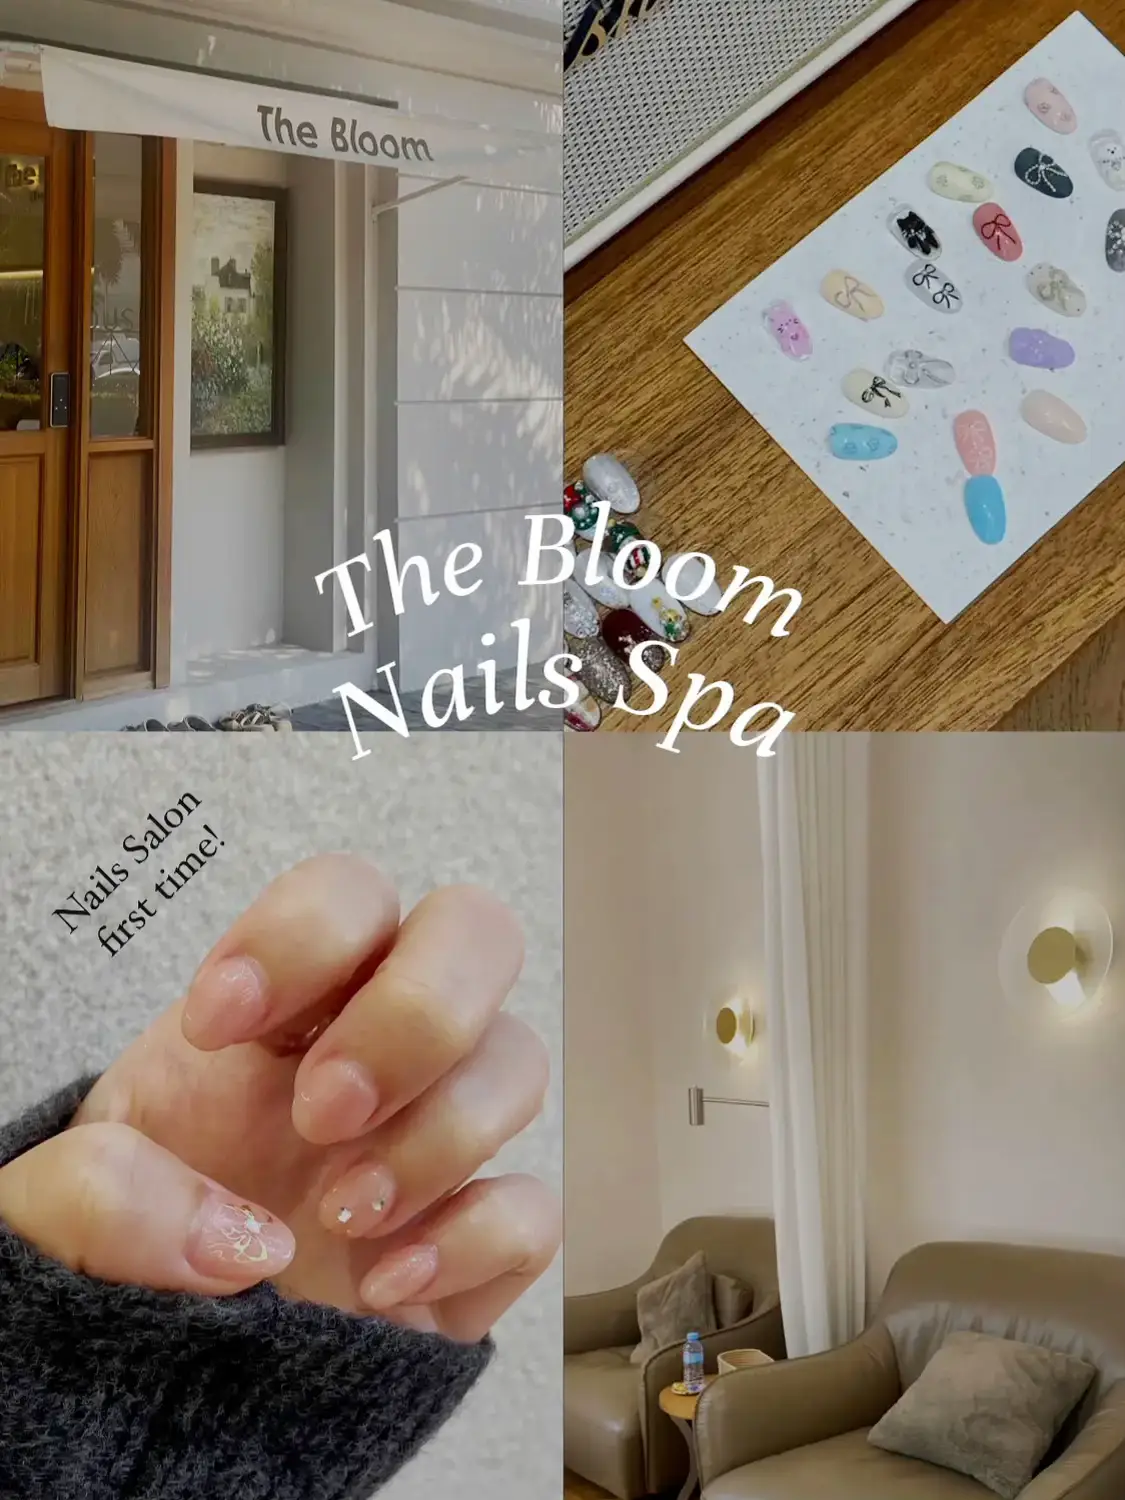 Bloom nail spa - Lemon8 Search